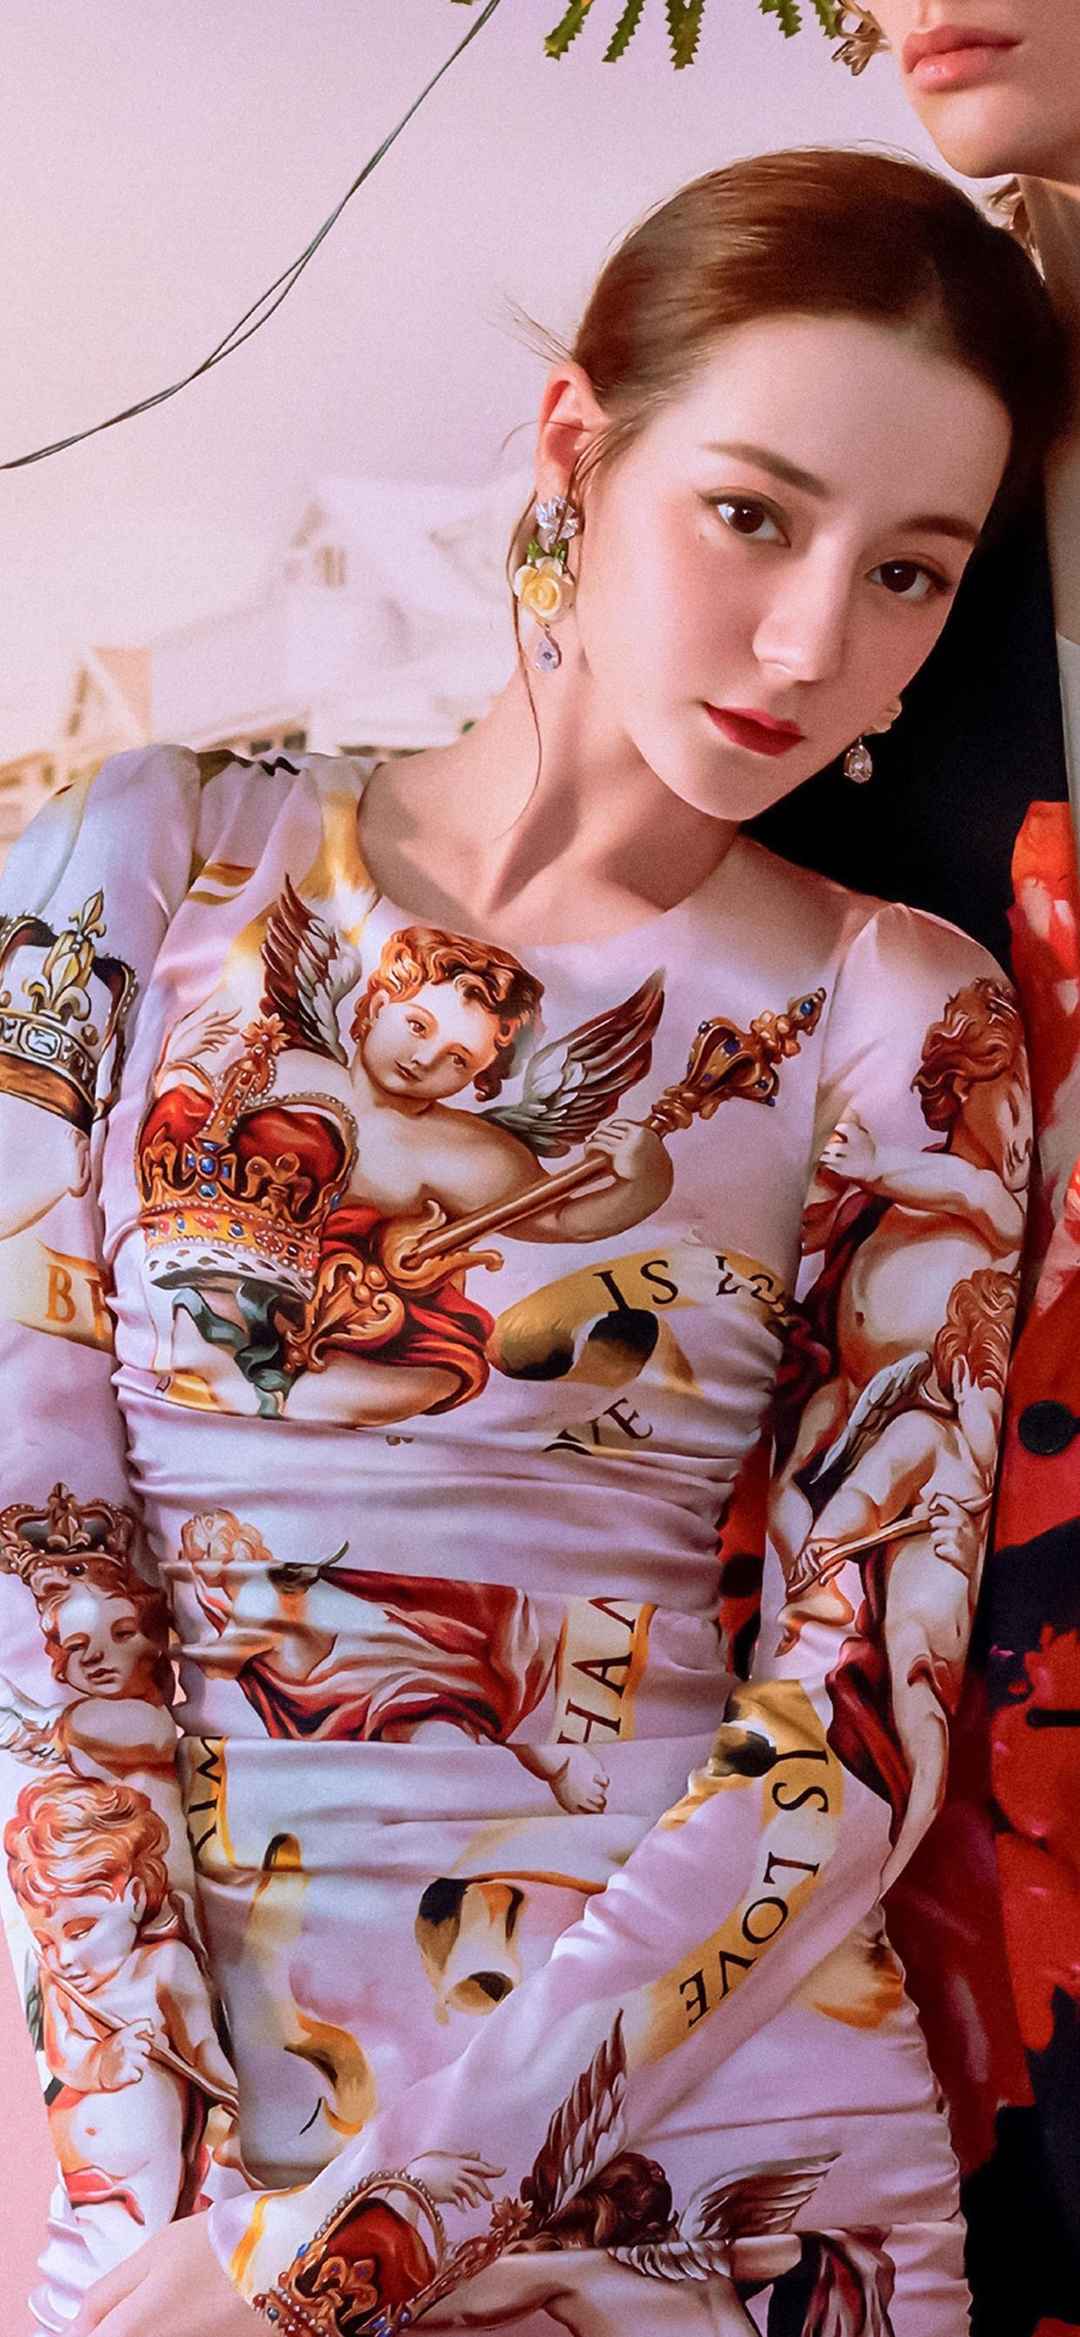 中国最美的女明星第一名迪丽热巴时尚气质写真手机壁纸